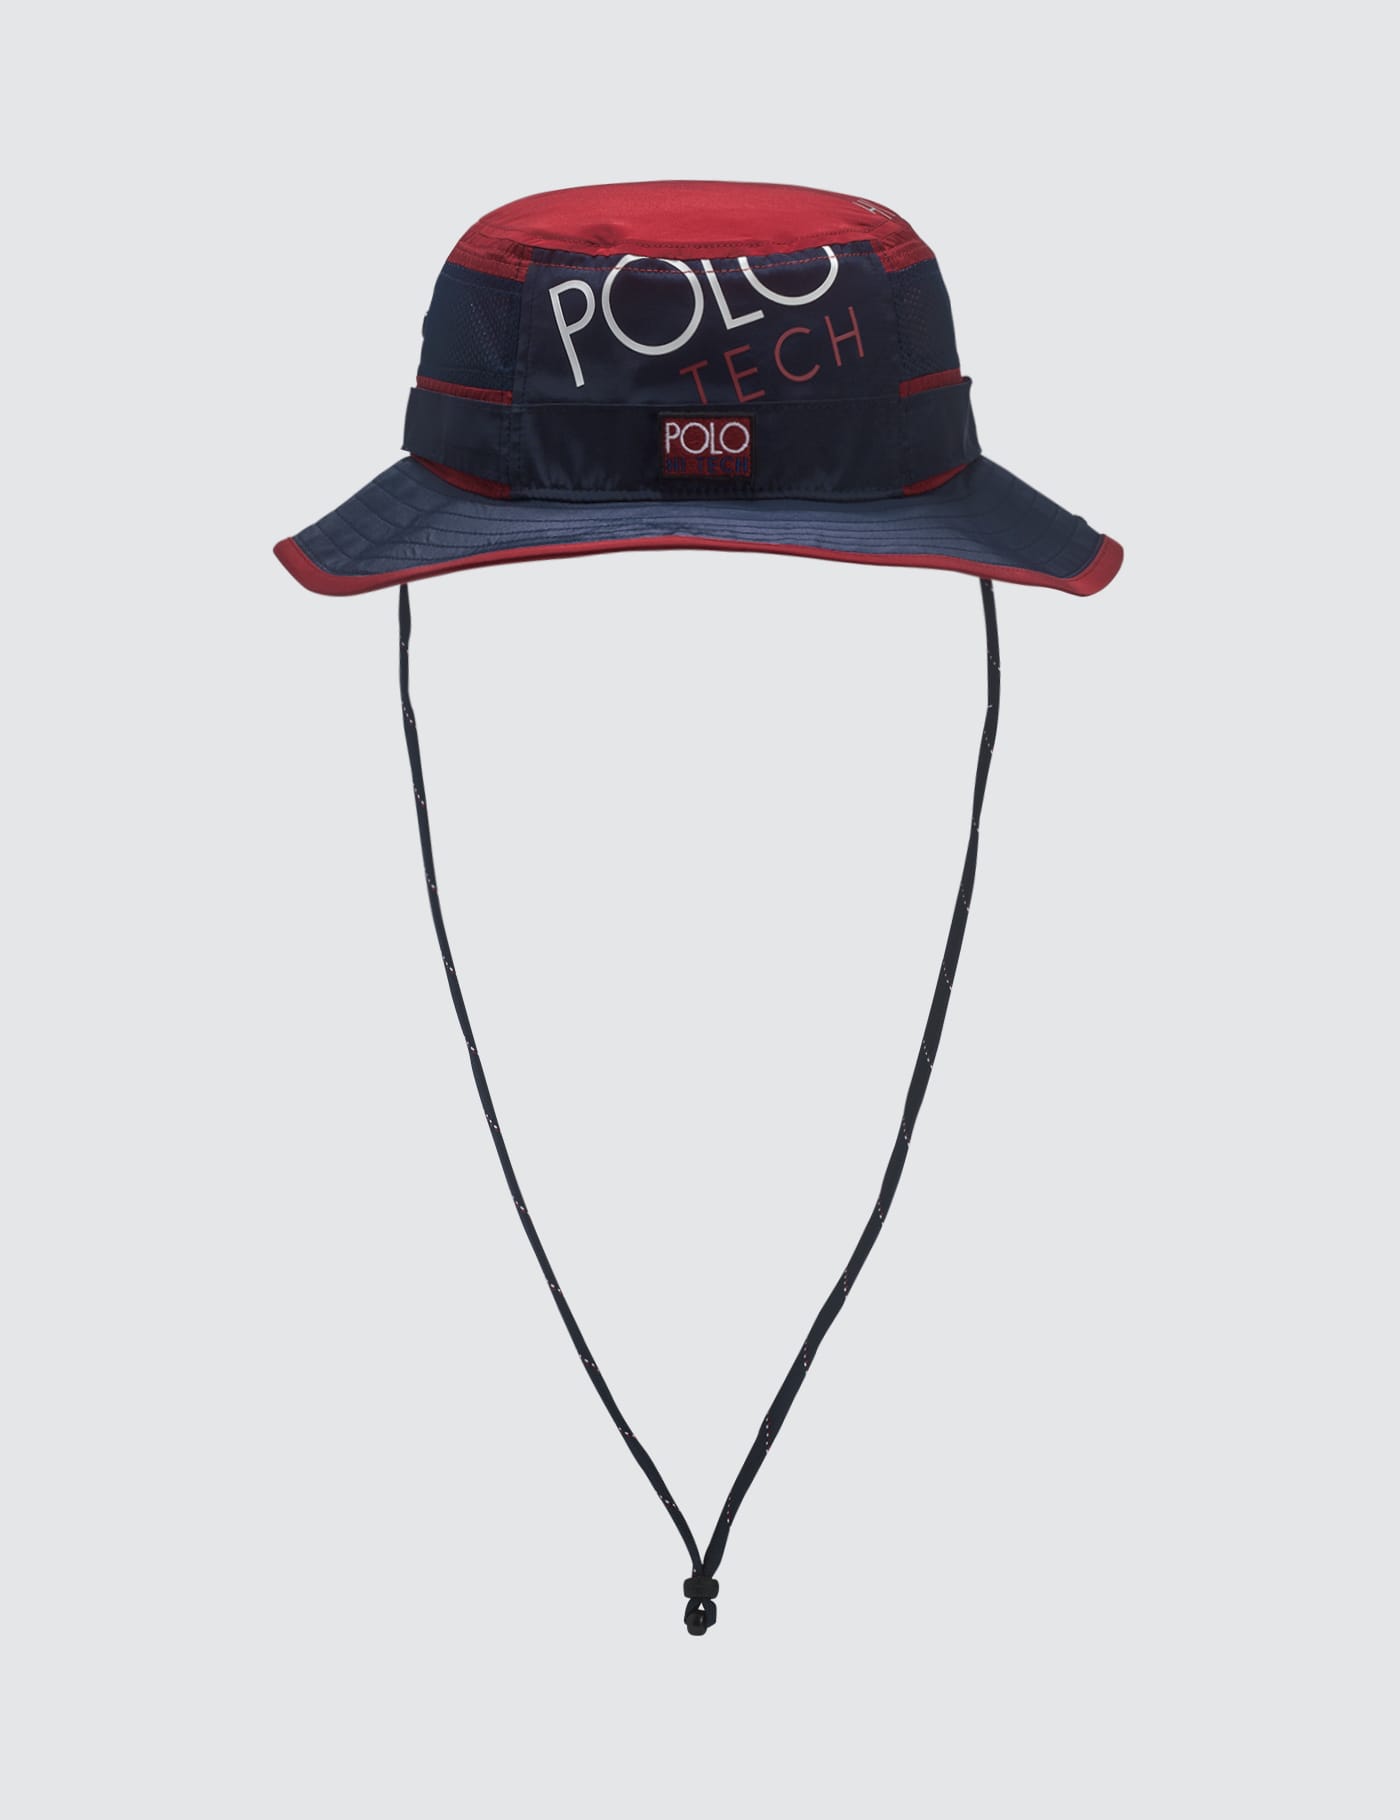 hi tech polo hat